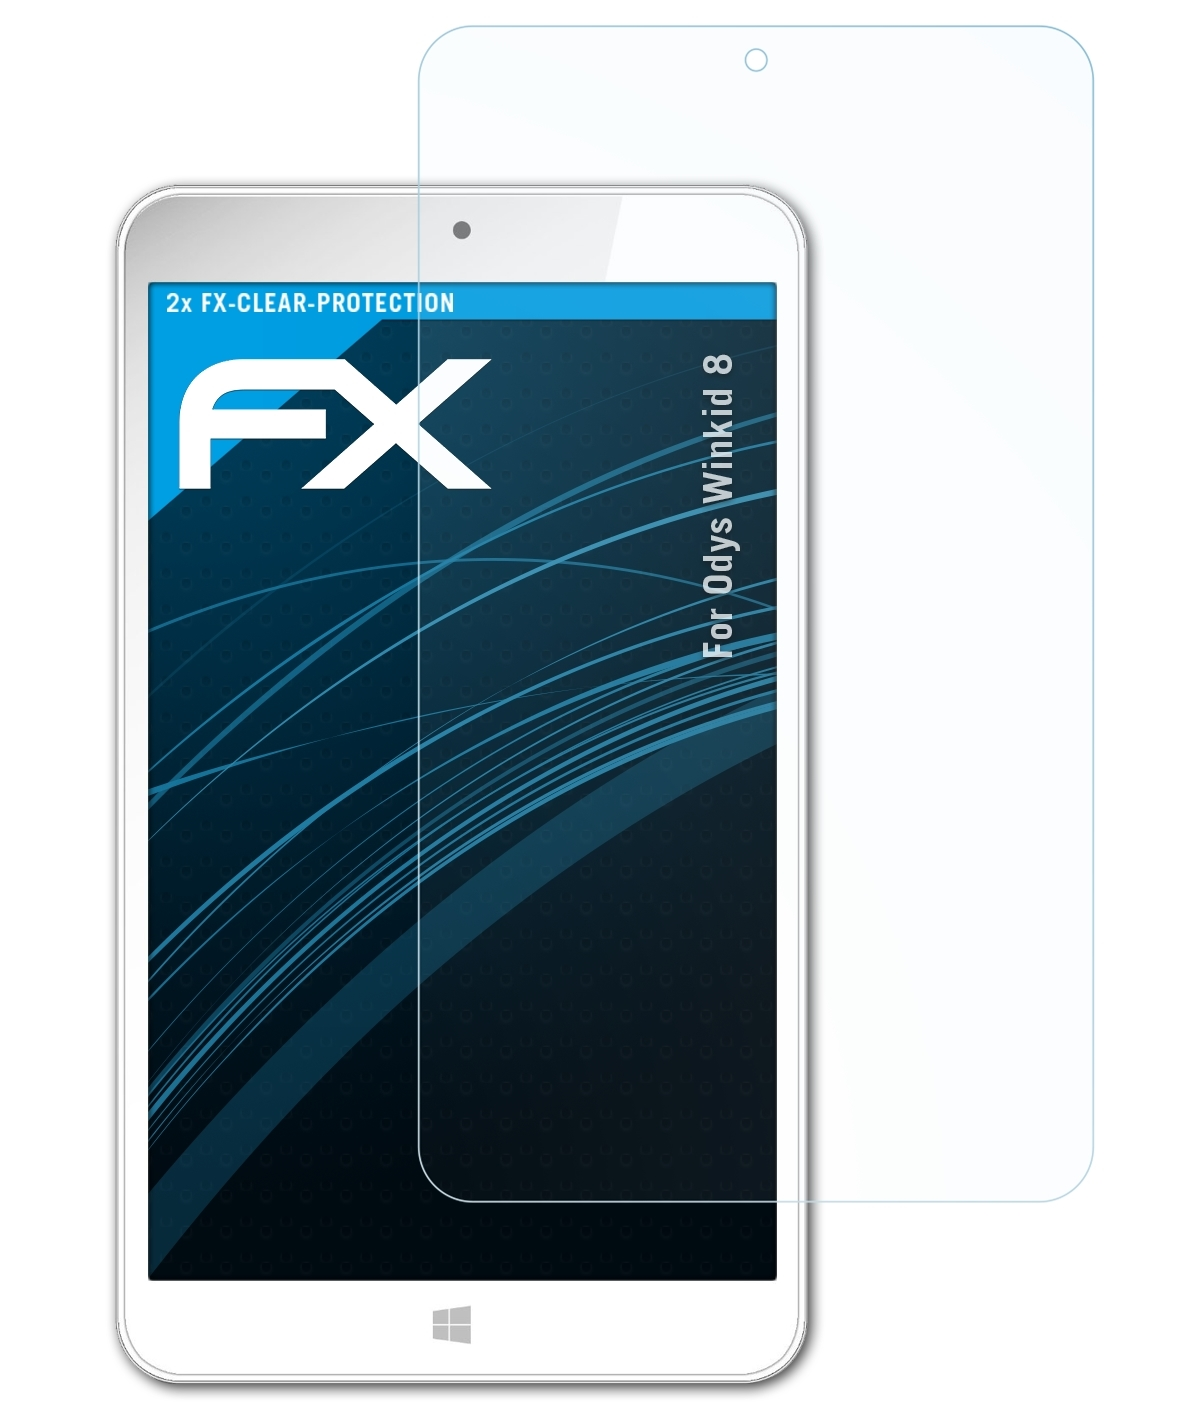 8) ATFOLIX Displayschutz(für Winkid 2x FX-Clear Odys